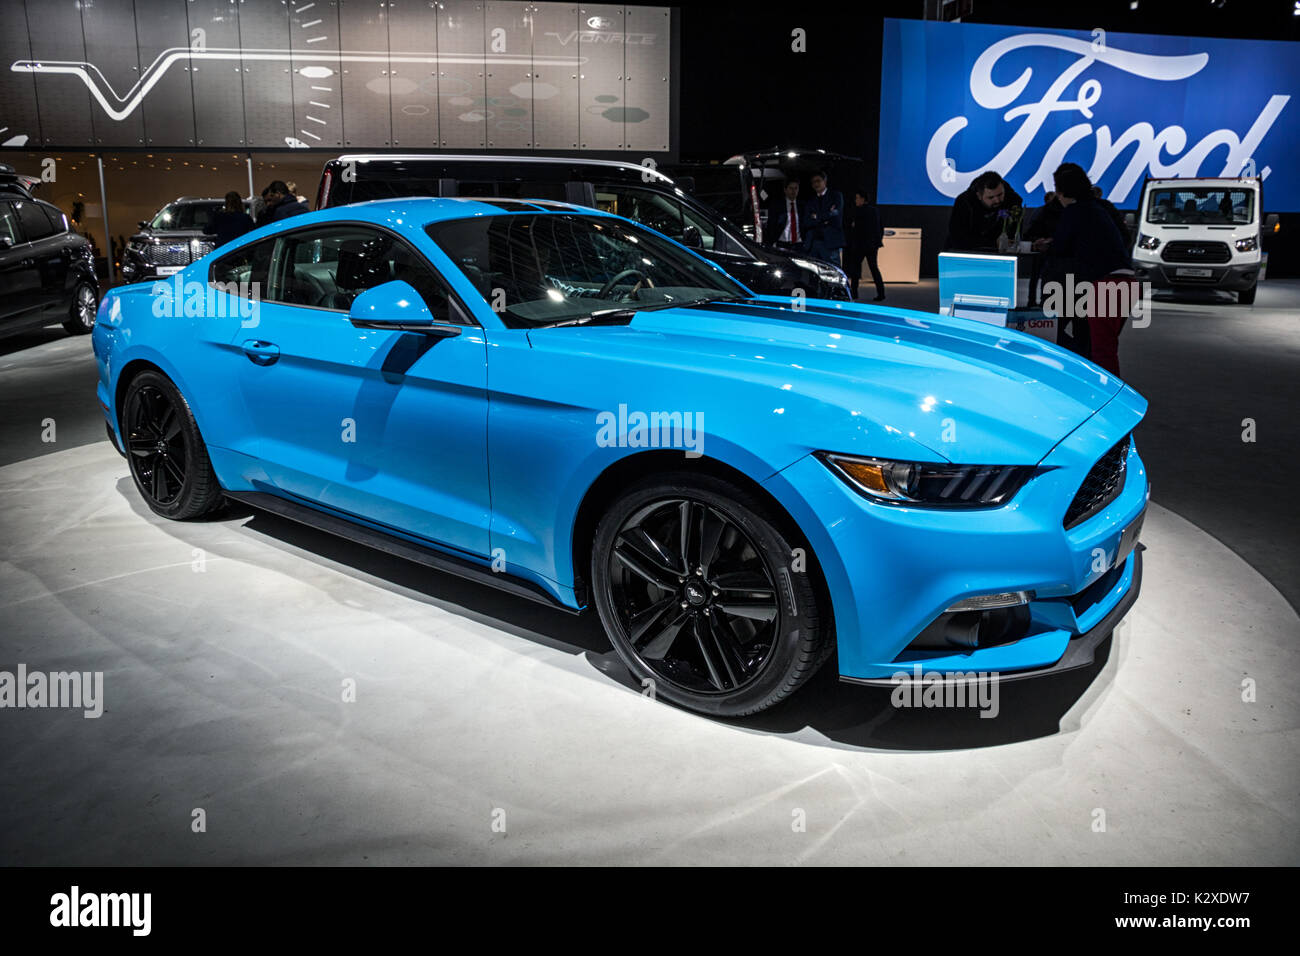 Bruselas - Jan 19, 2017: Ford Mustang coche deportivo en la pantalla en el Motor Show de Bruselas. Foto de stock